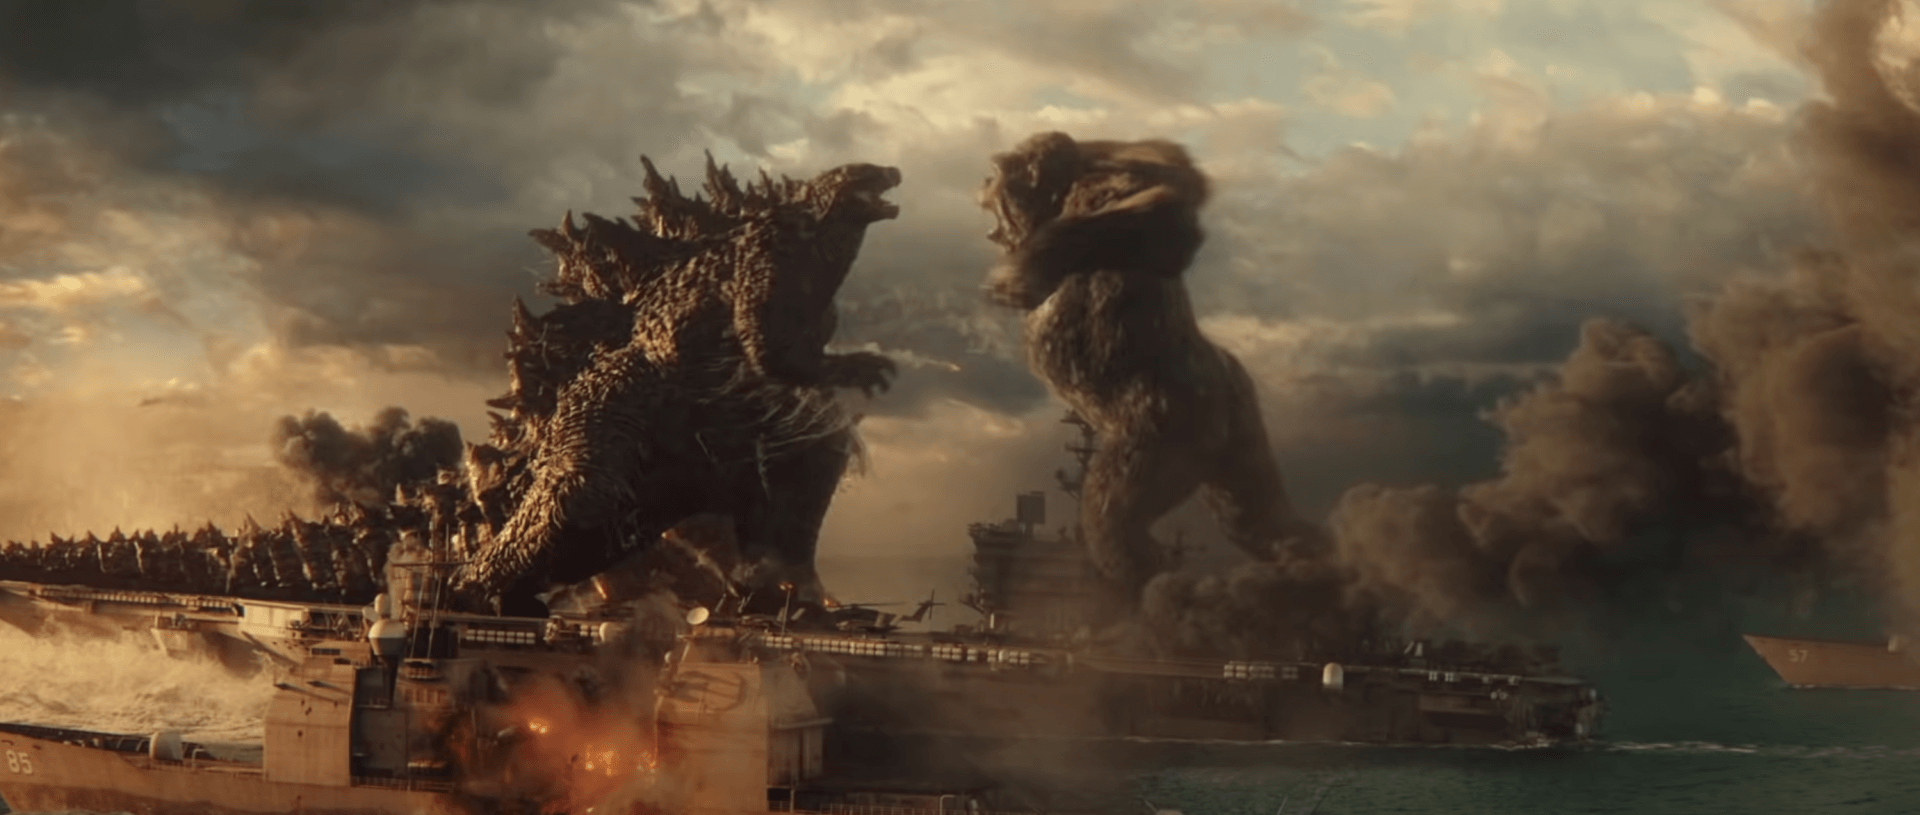 A Godzilla Kong ellen folytatásának rövid leírása alapján csak az egyik titán tér vissza